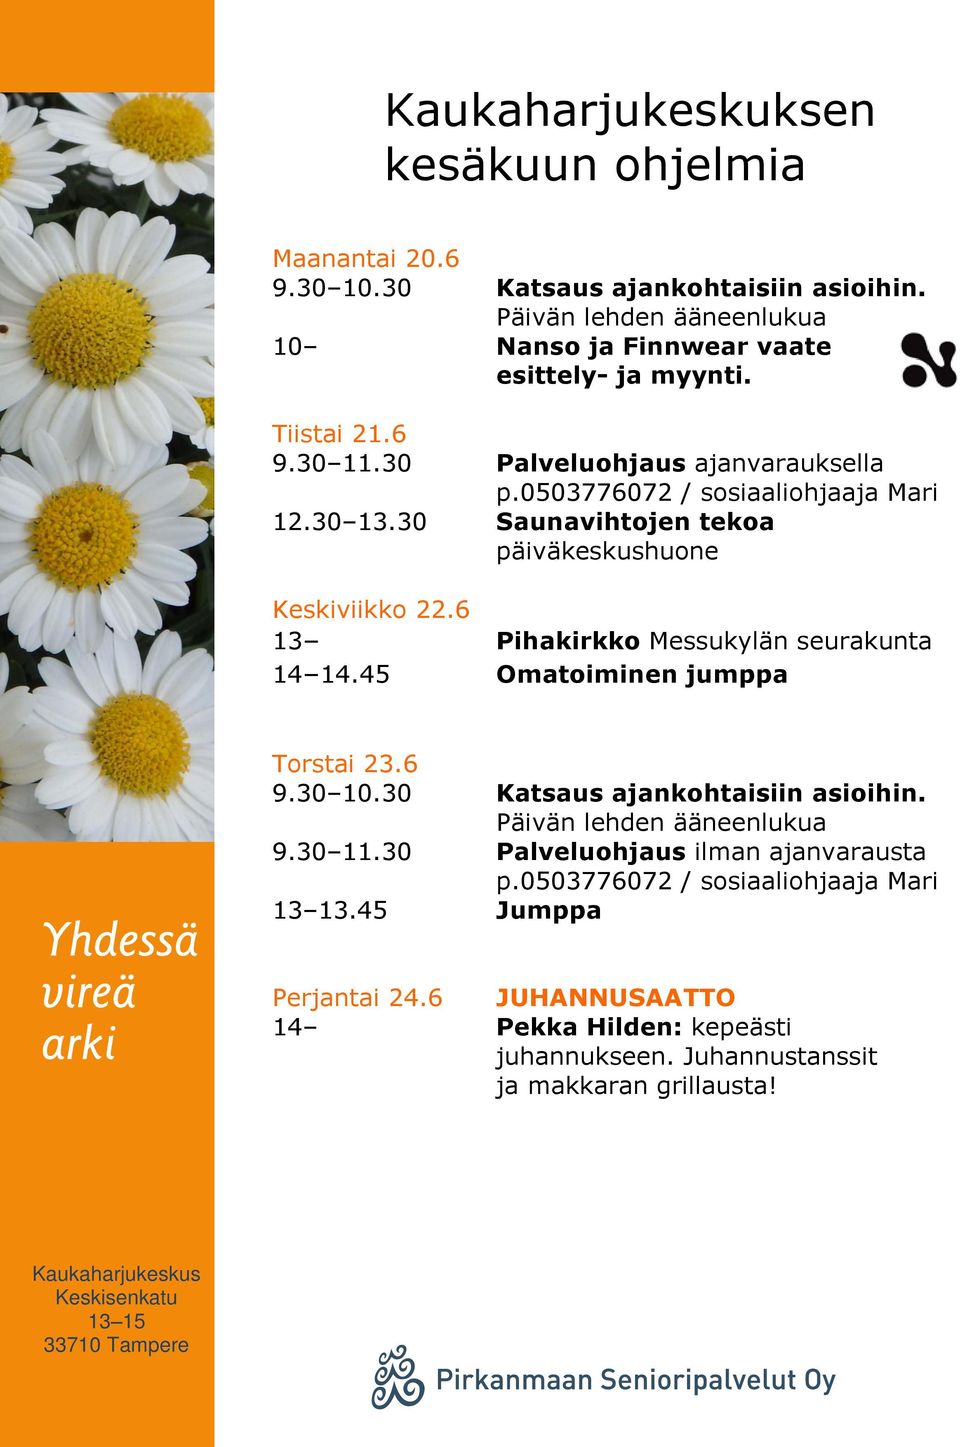 6 13 Pihakirkko Messukylän seurakunta Torstai 23.6 Perjantai 24.